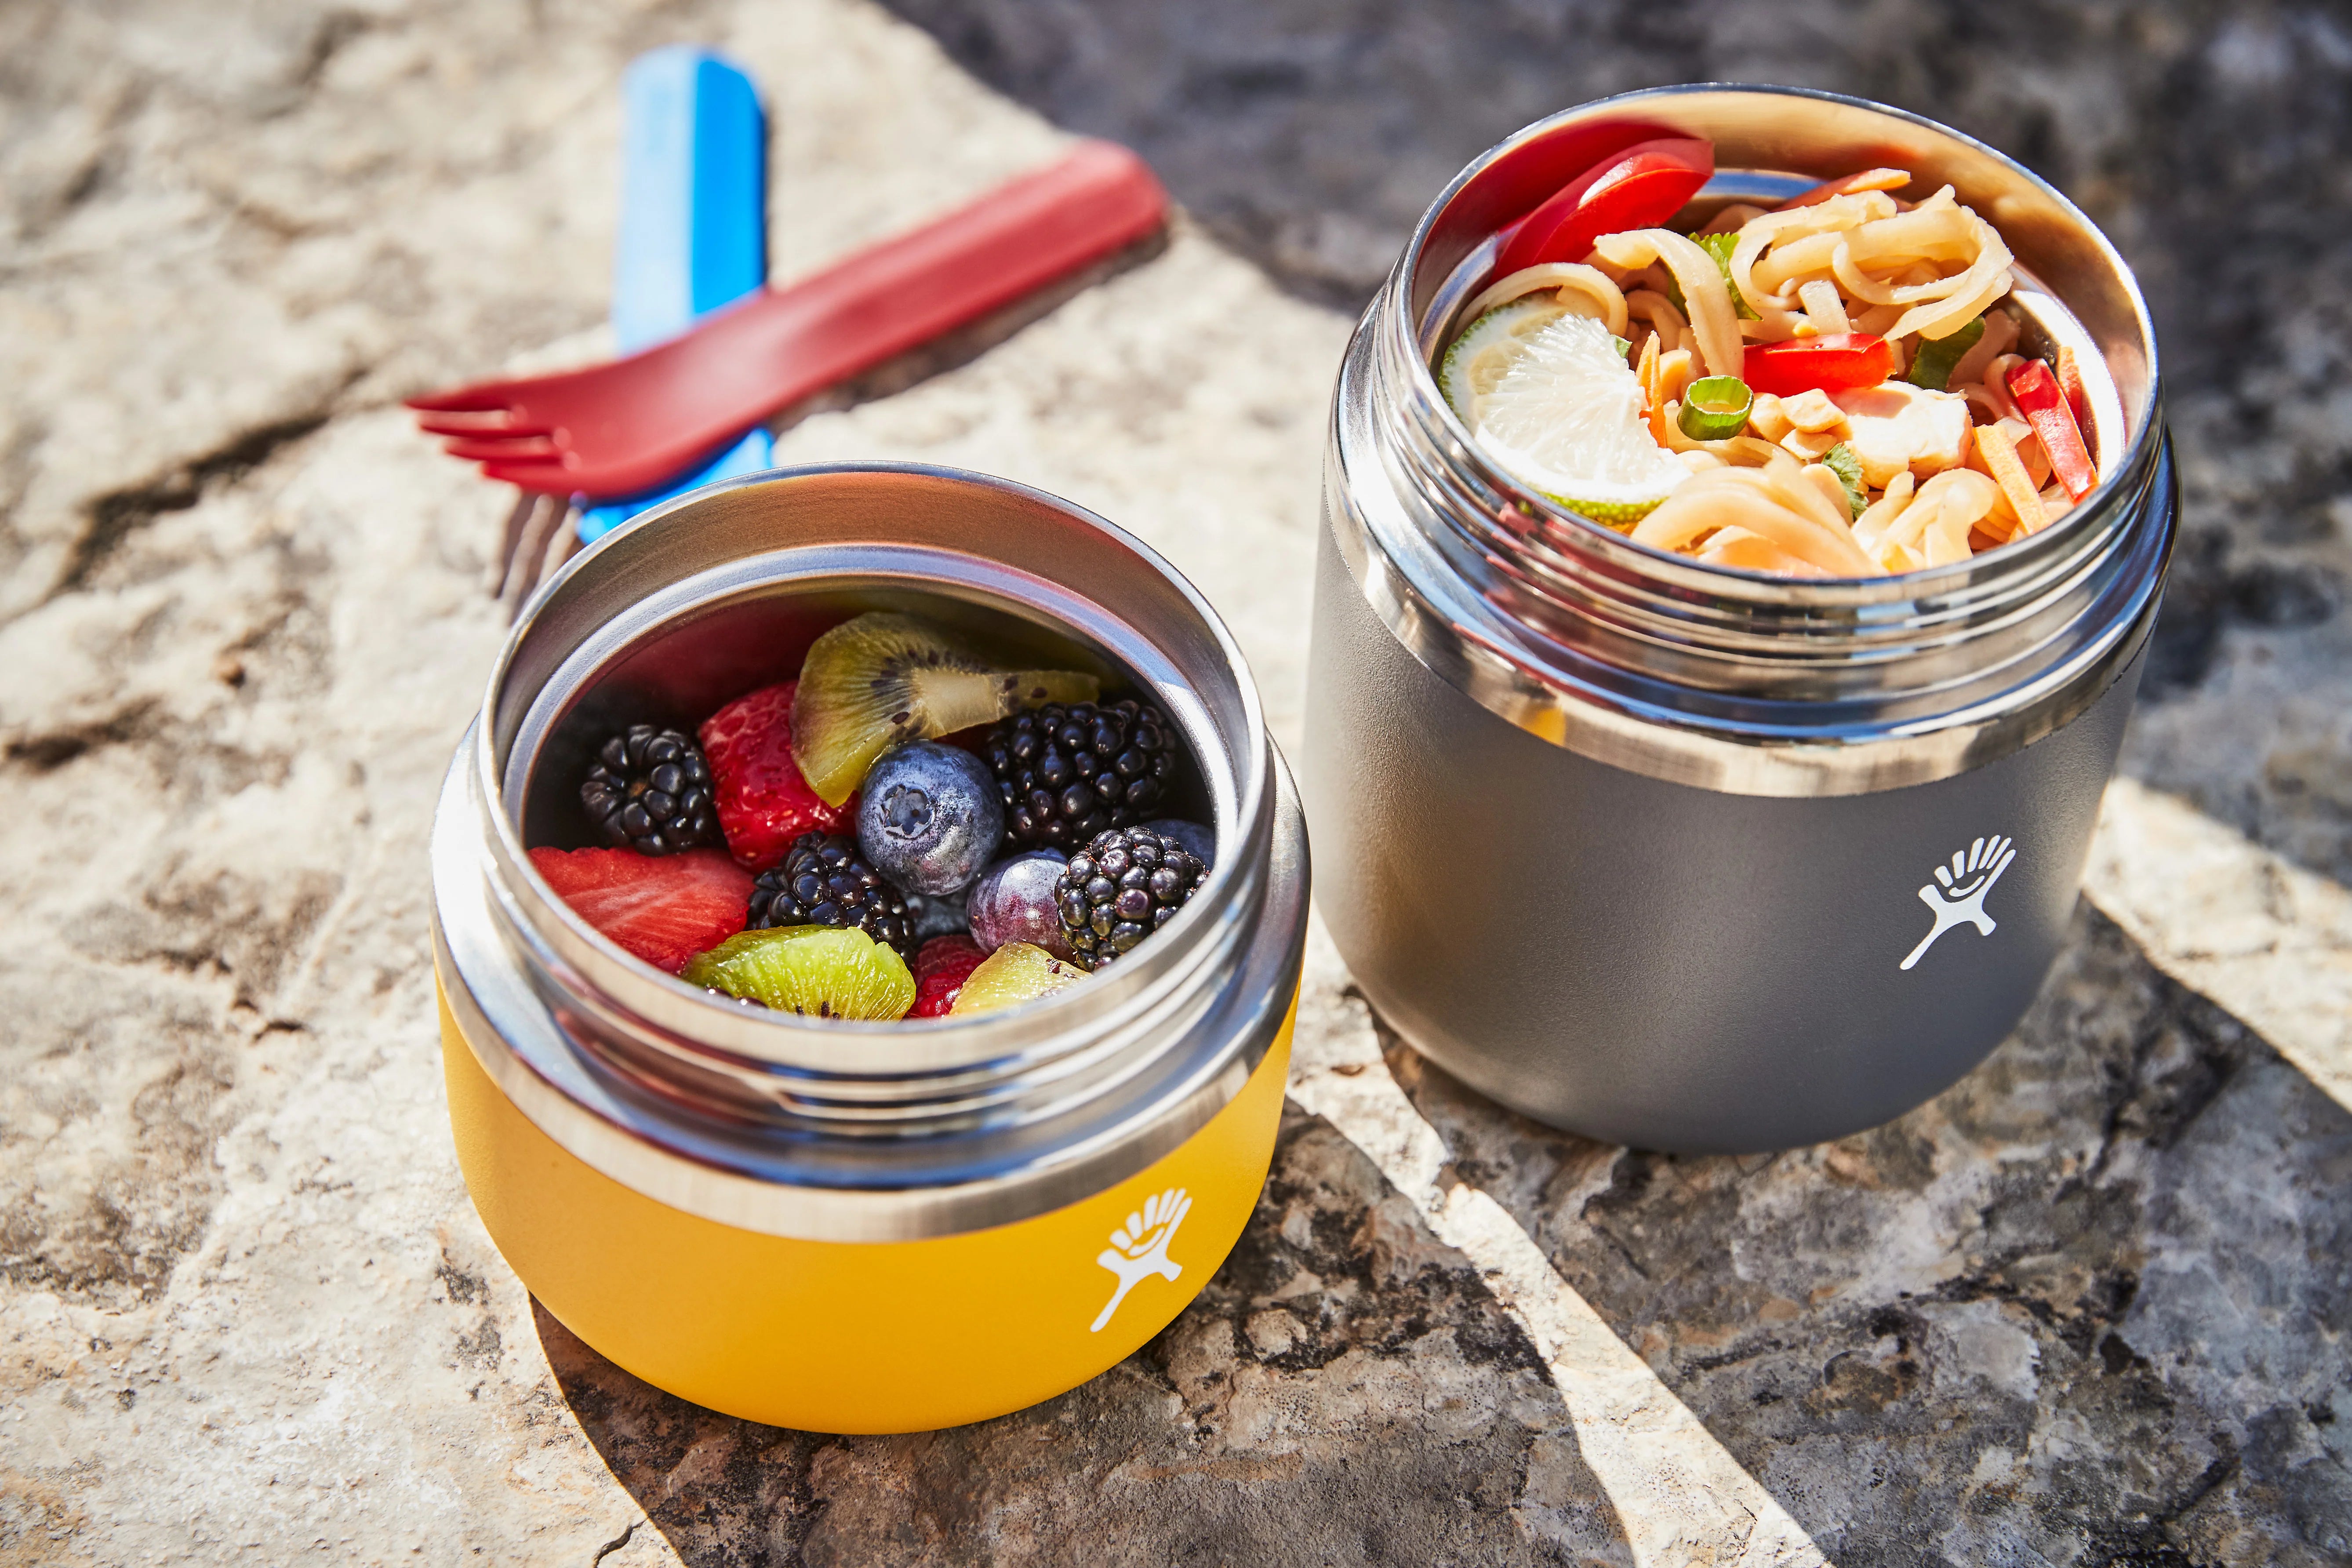 Hydro Flask 12oz Insulated Food Jar